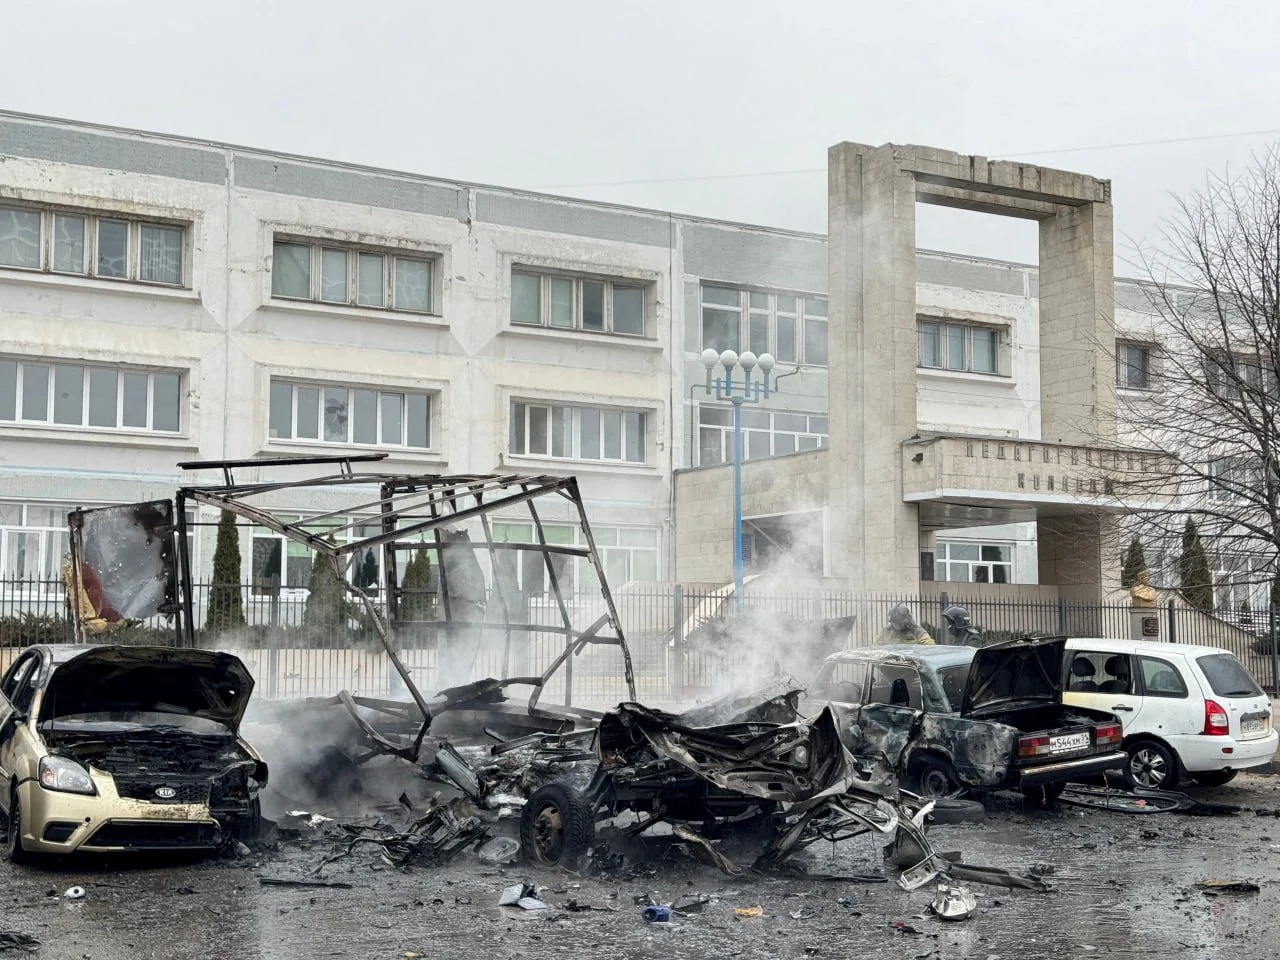 Ουκρανικοί βομβαρδισμοί στο Μπελγορόντ – Κλειστά σχολεία και εμπορικά κέντρα